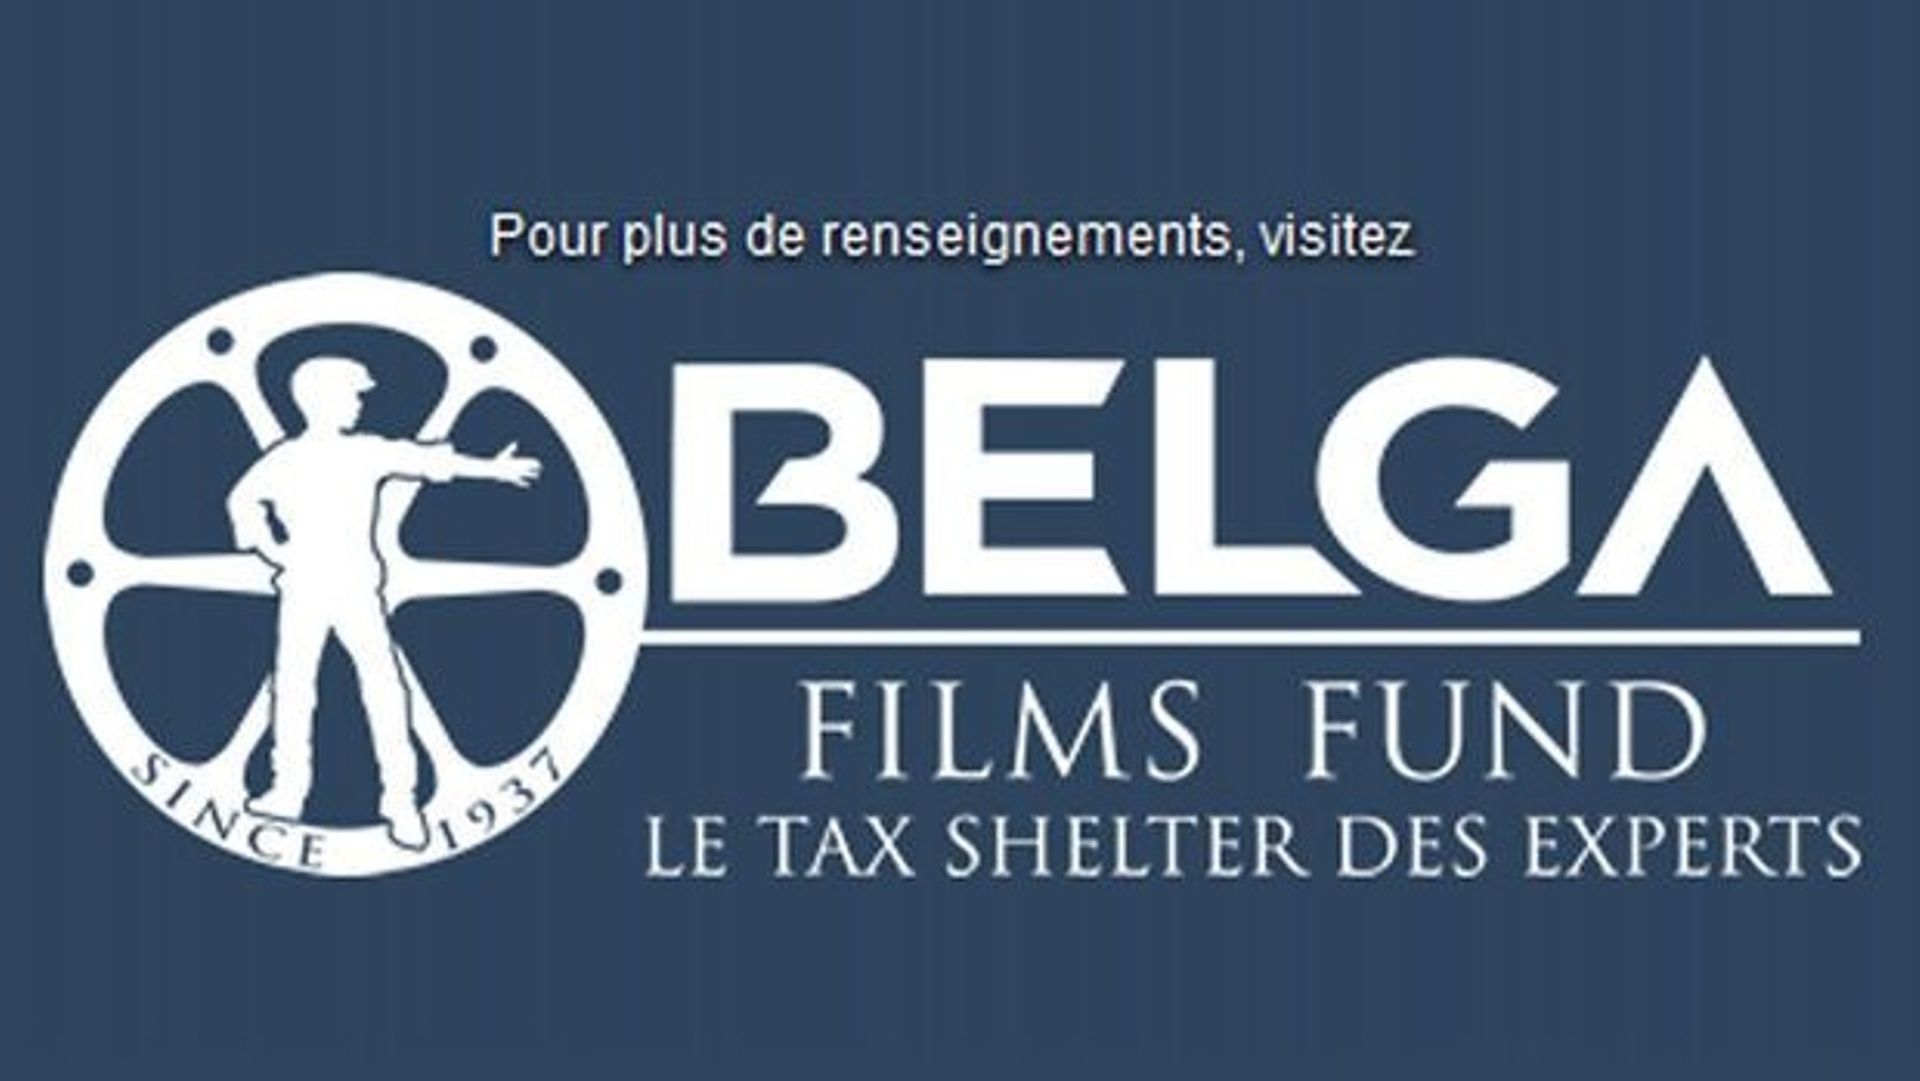 belga-films-fund-nouvel-operateur-tax-shelter-complete-l-offre-de-belga-films